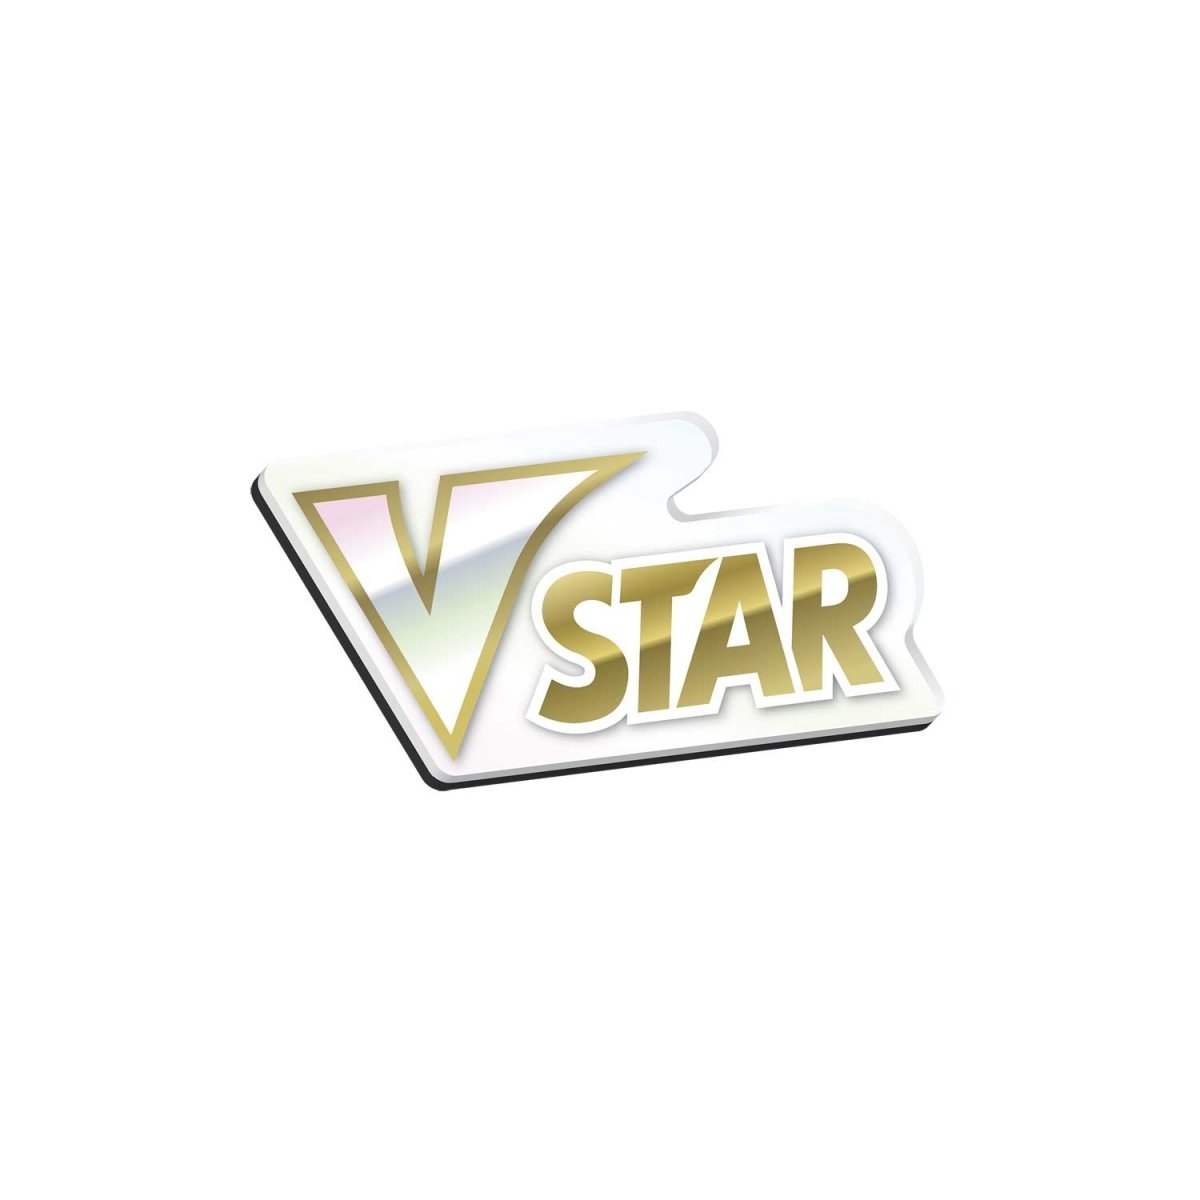 Pokemon TCG: VSTAR Premium Collection - Lucario, Card Games